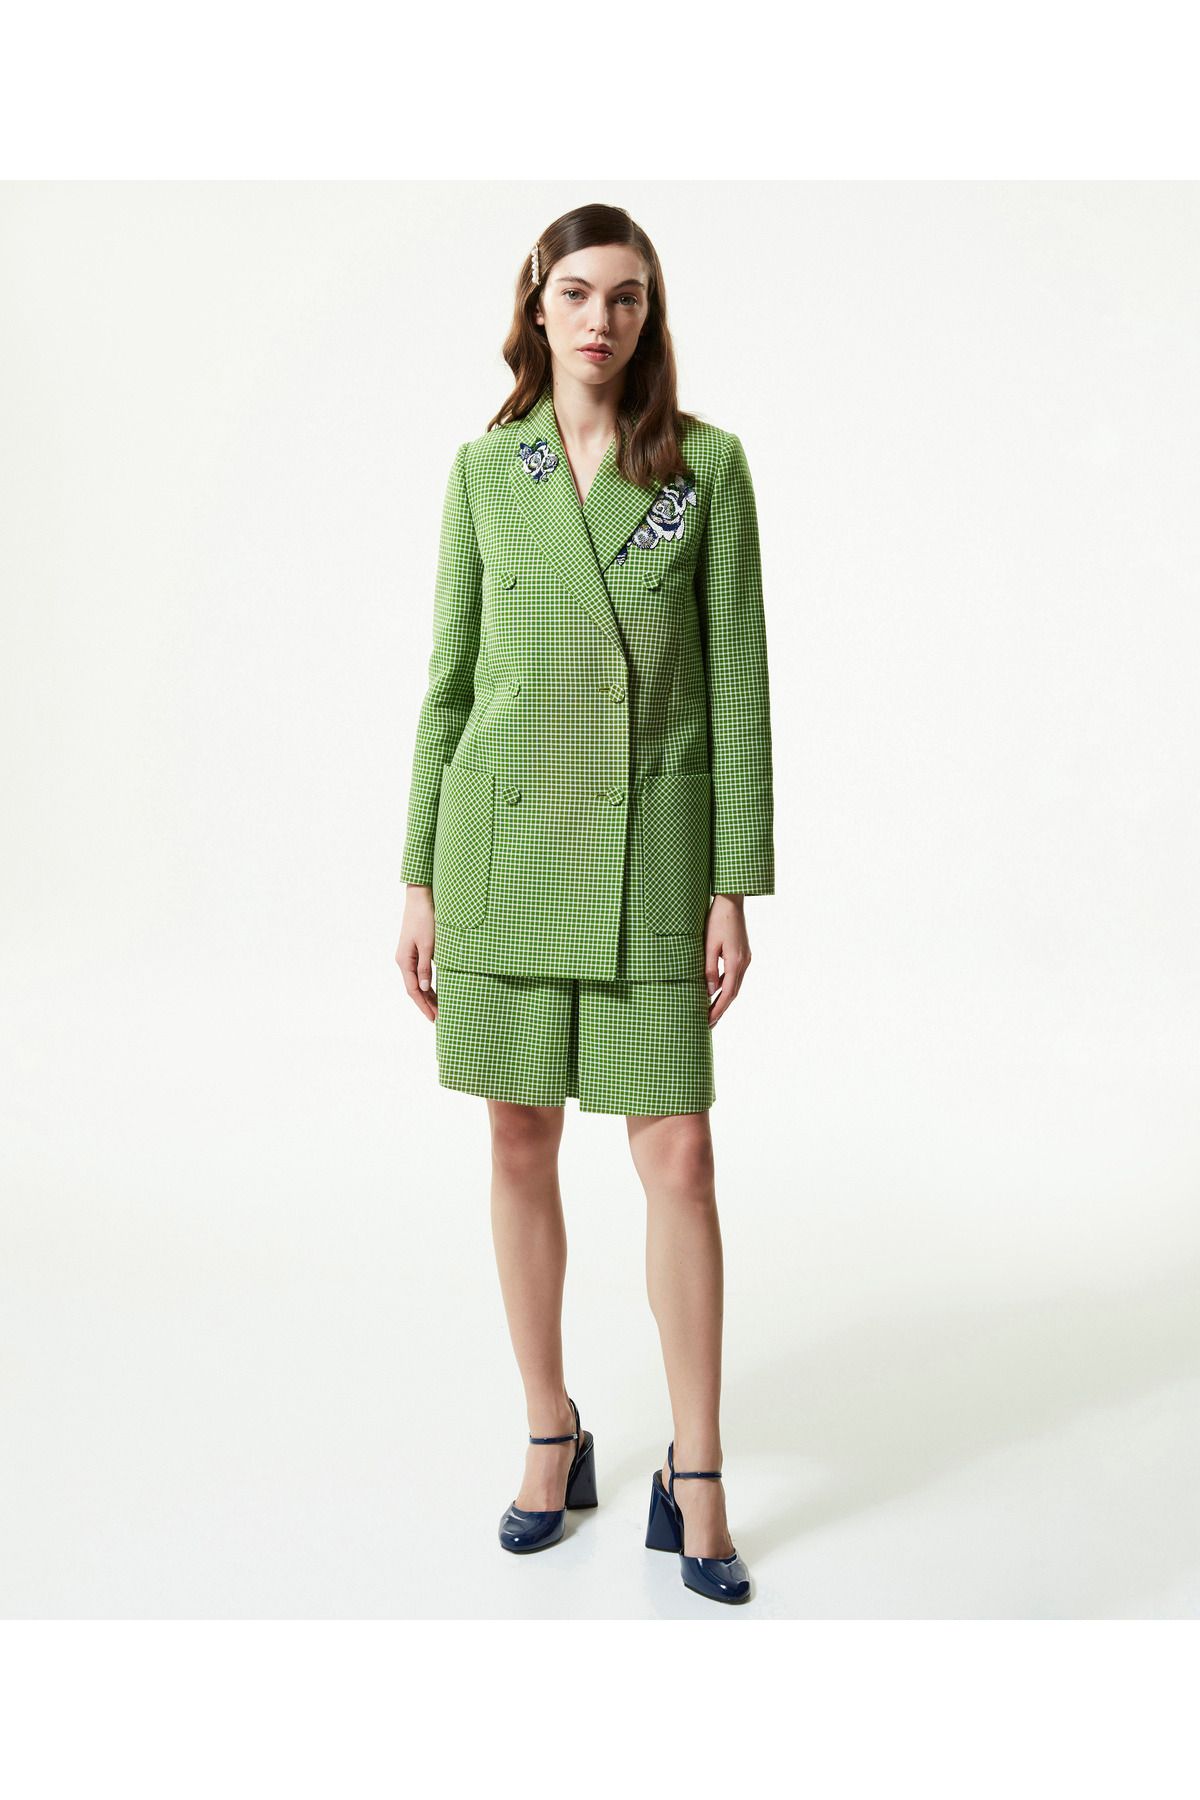 Machka Kadın Yeşil Ceket